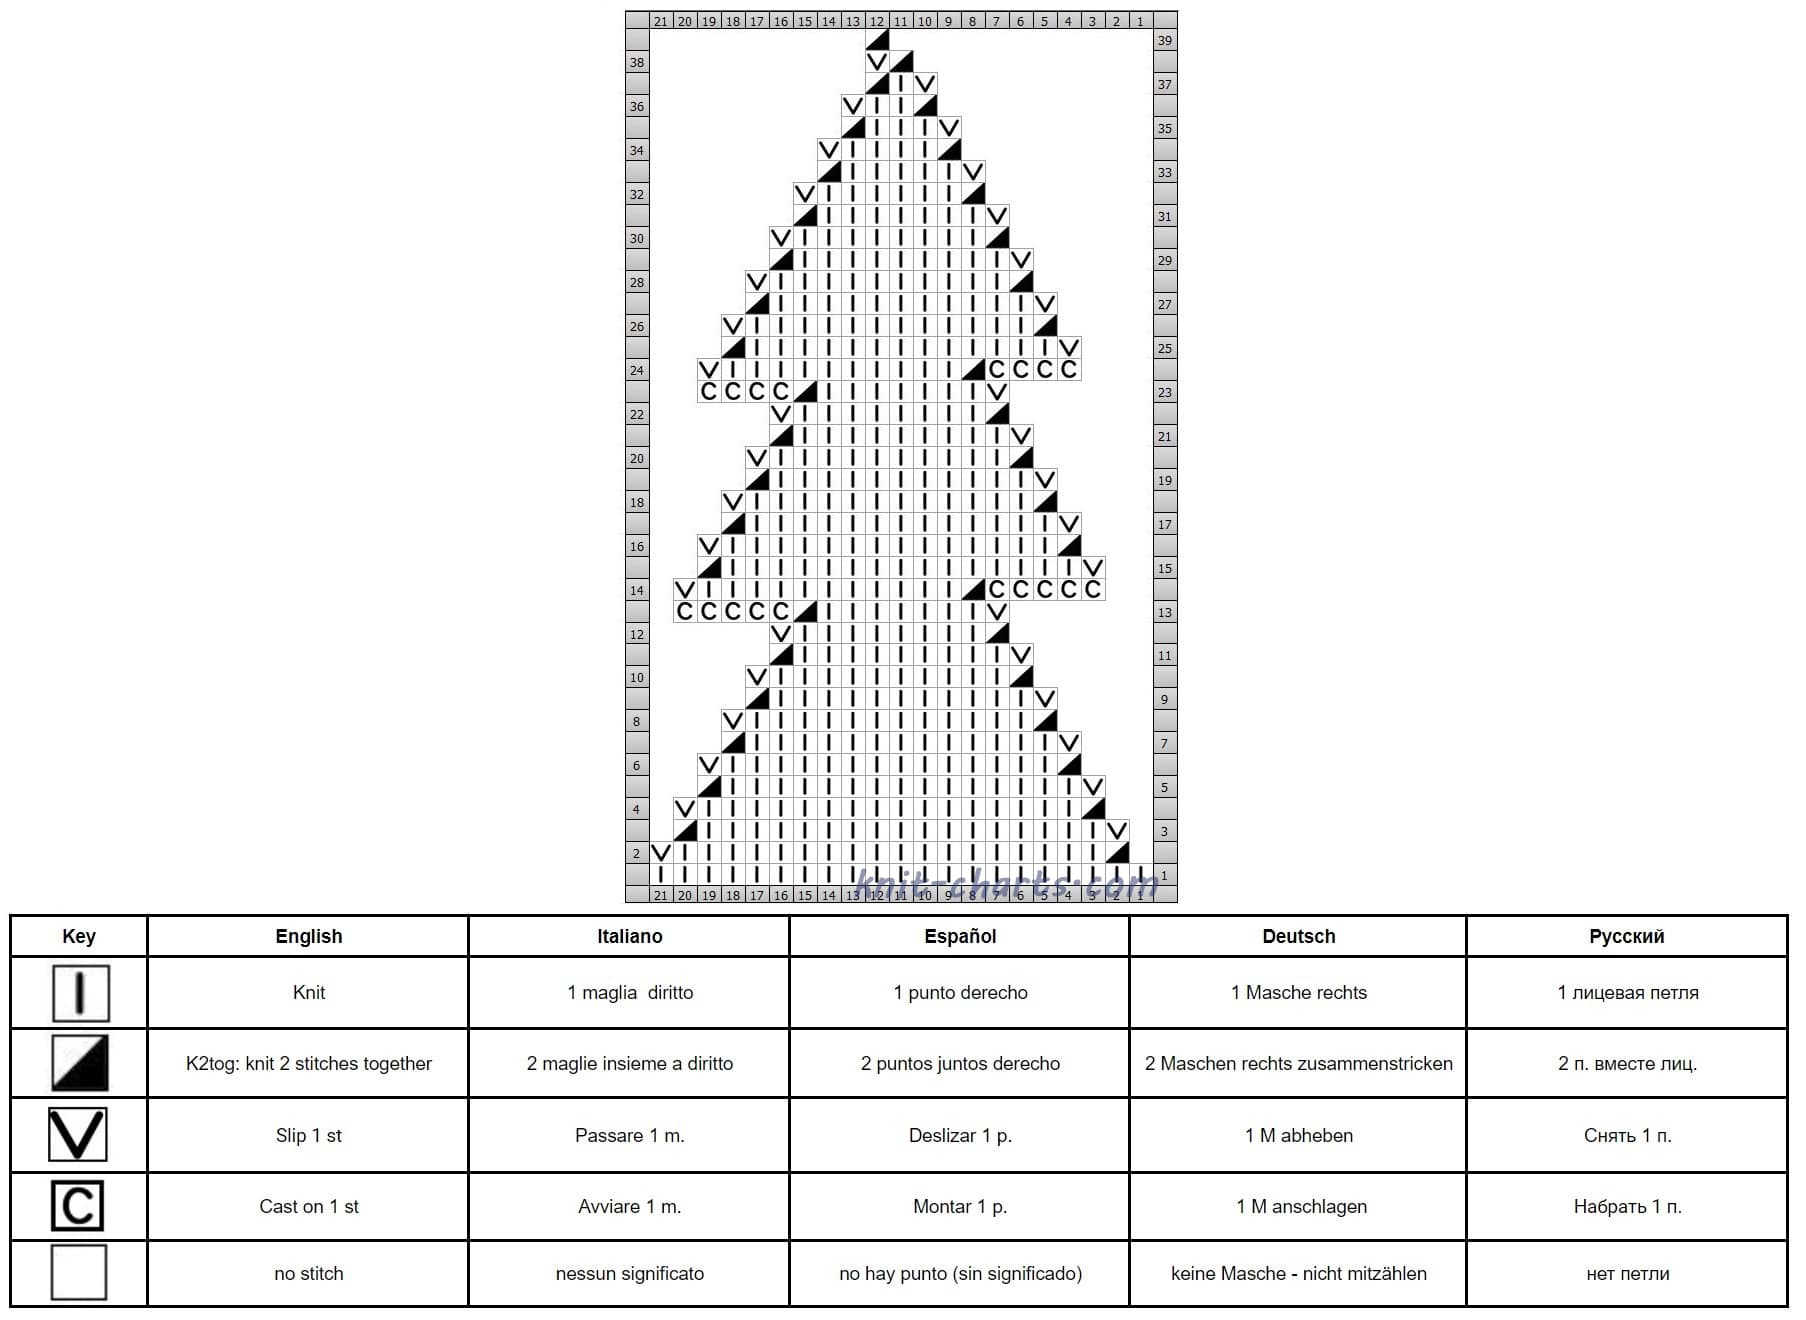 Christmas tree chart